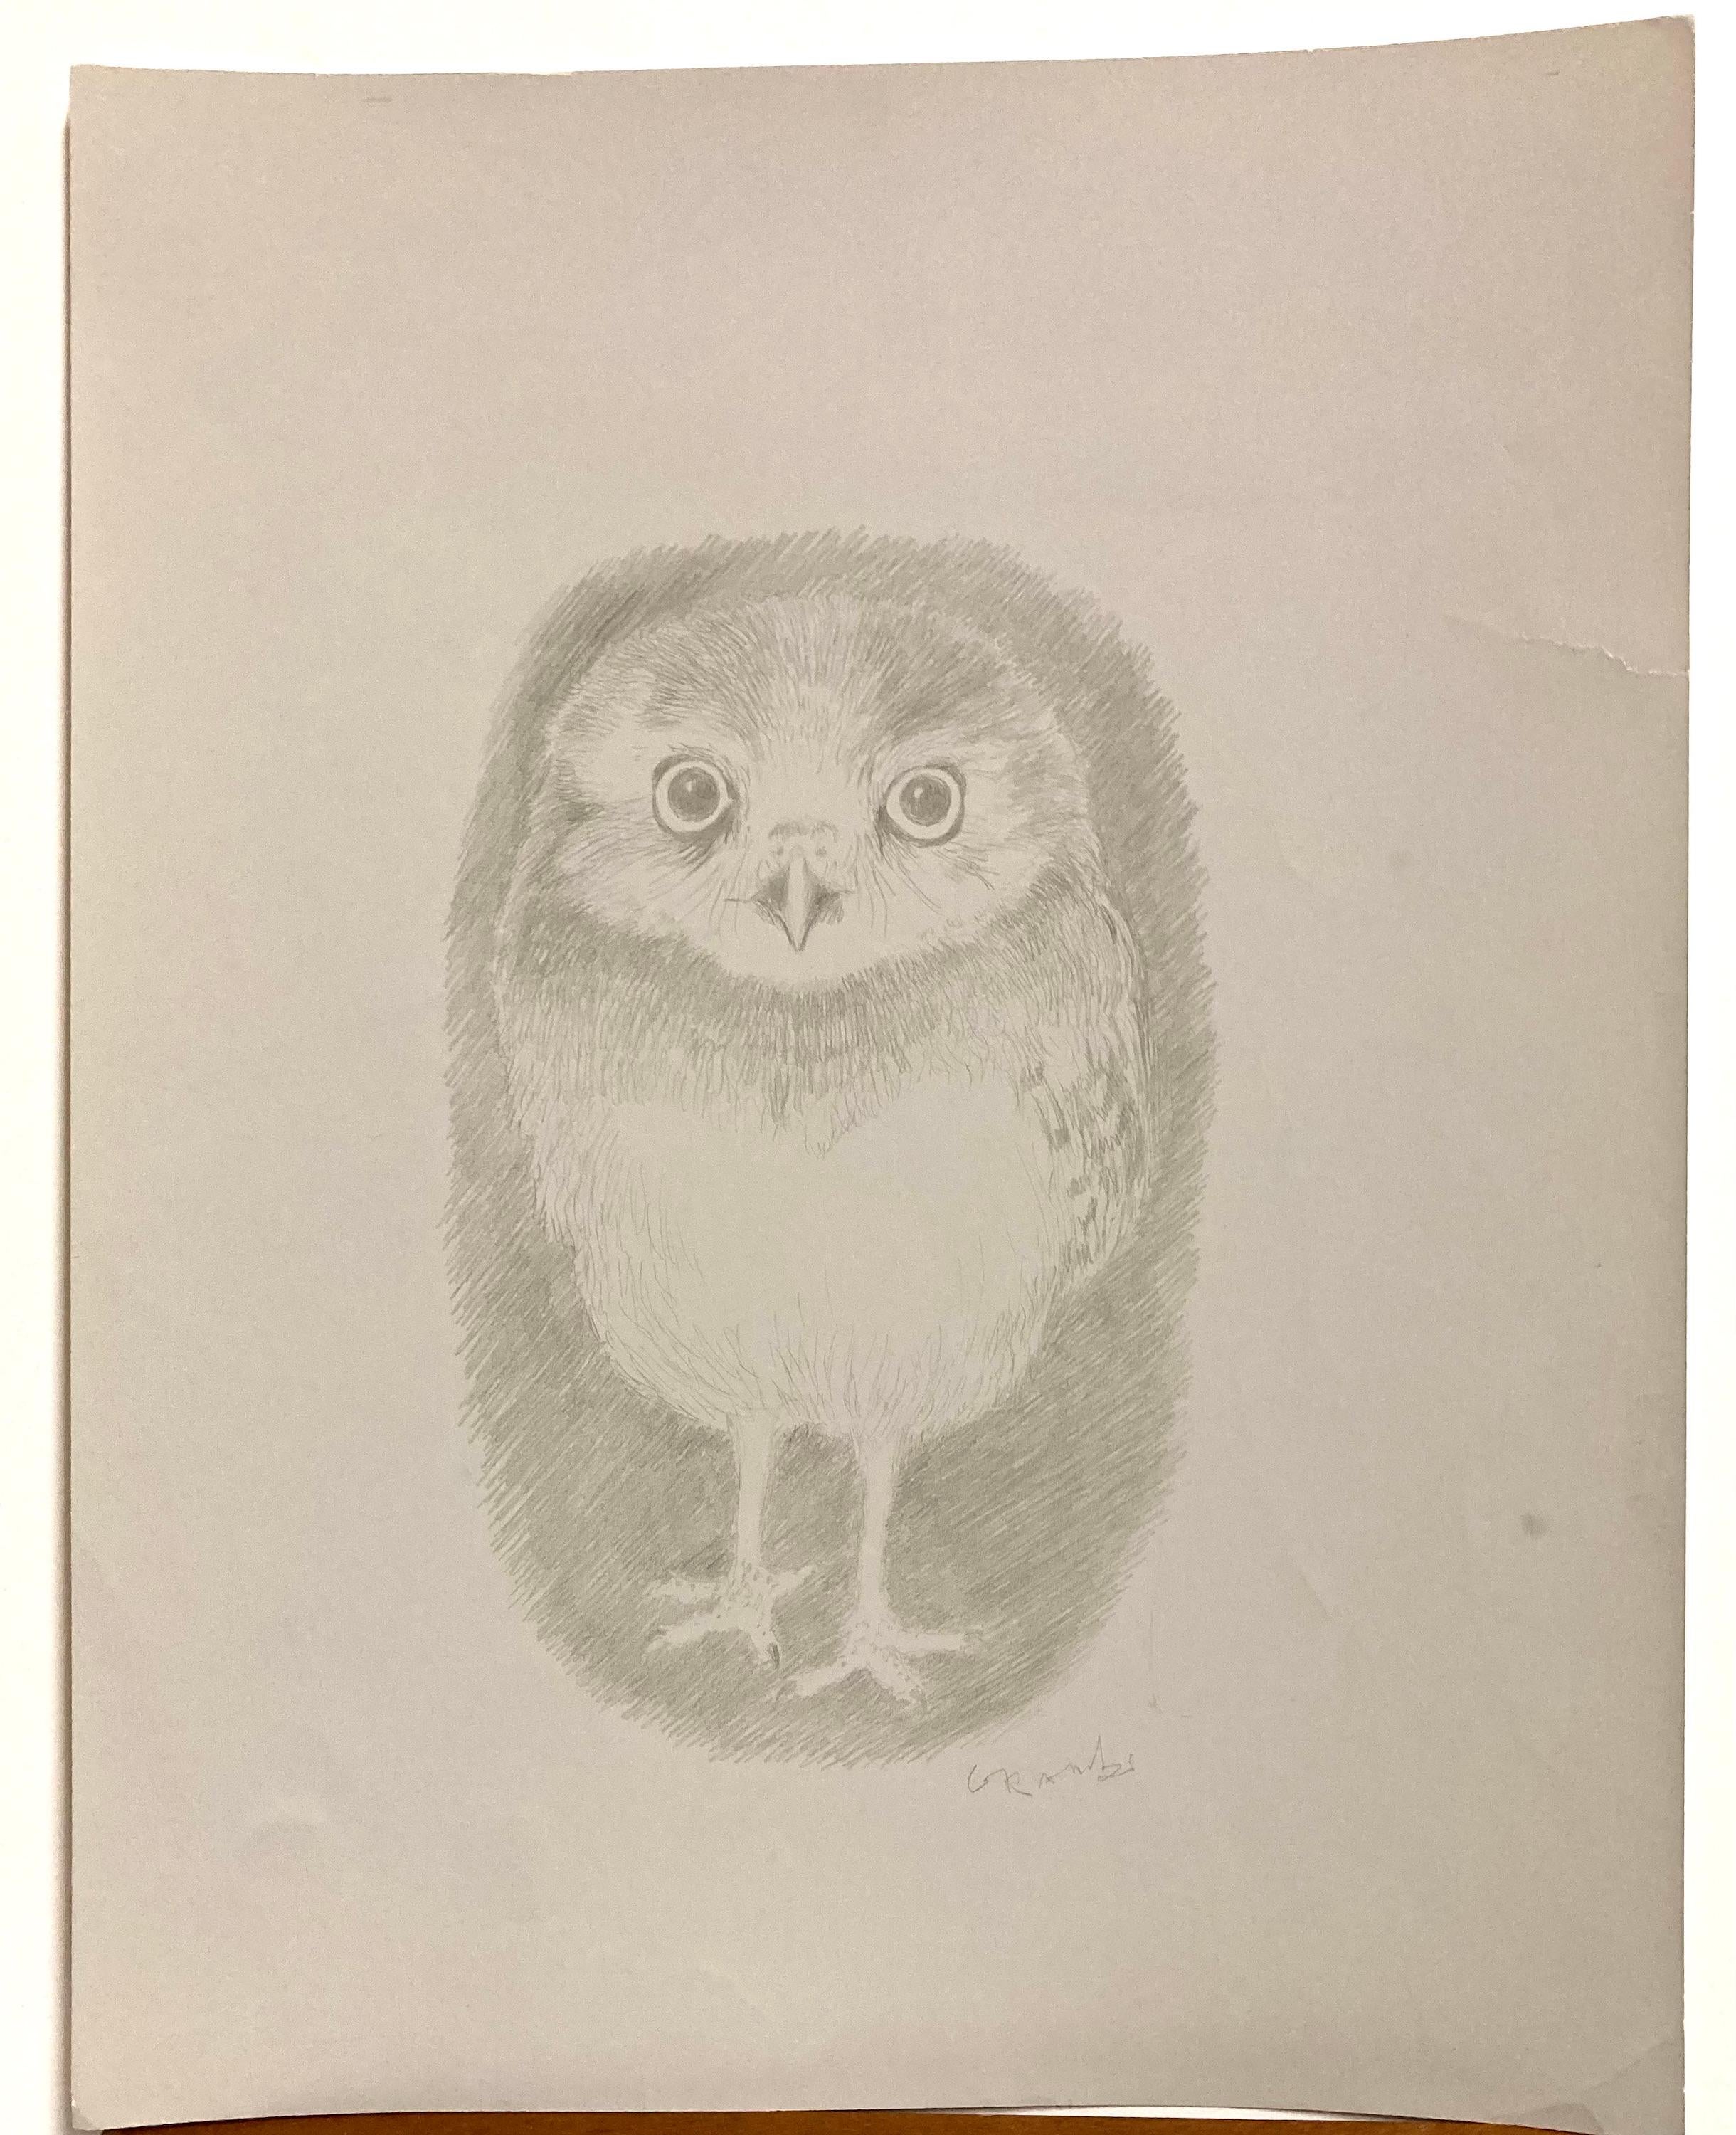 Blanche Grambs, deren Karriere bei der WPA begann, war eine äußerst geschickte Zeichnerin.

Ihre Vögel sind meisterhaft. Obwohl wir das Wort "Bleistift" für das Medium verwenden, handelt es sich in Wirklichkeit um eine Silberstiftzeichnung auf grau